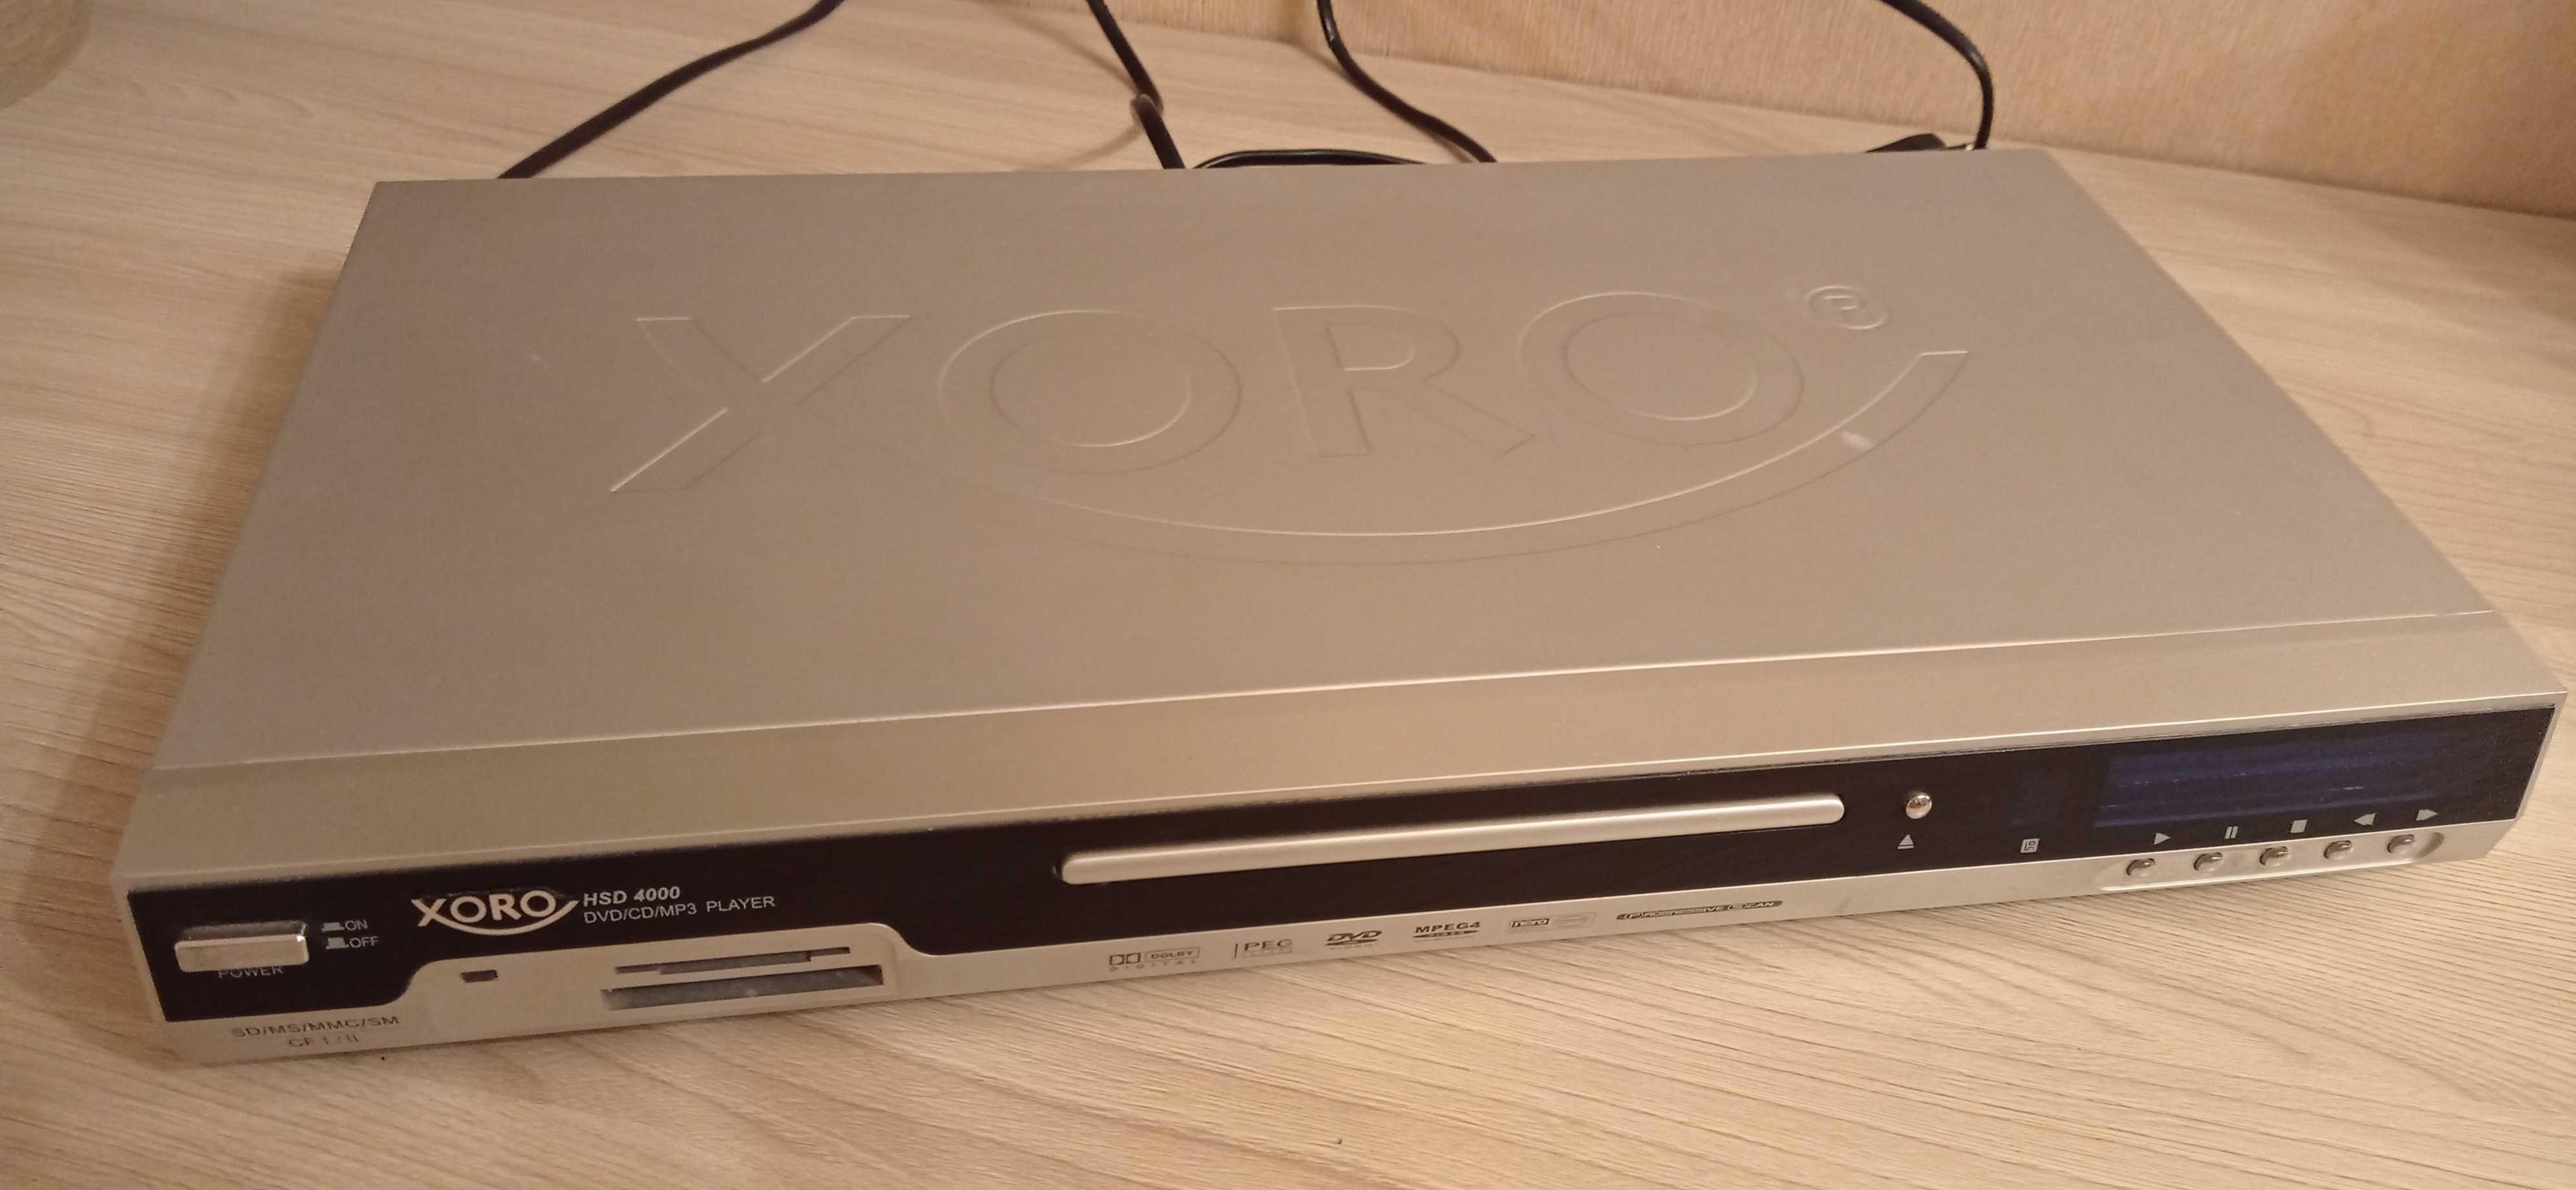 DVD програвач XORO HSD 4000 зі слотом для карти памяті